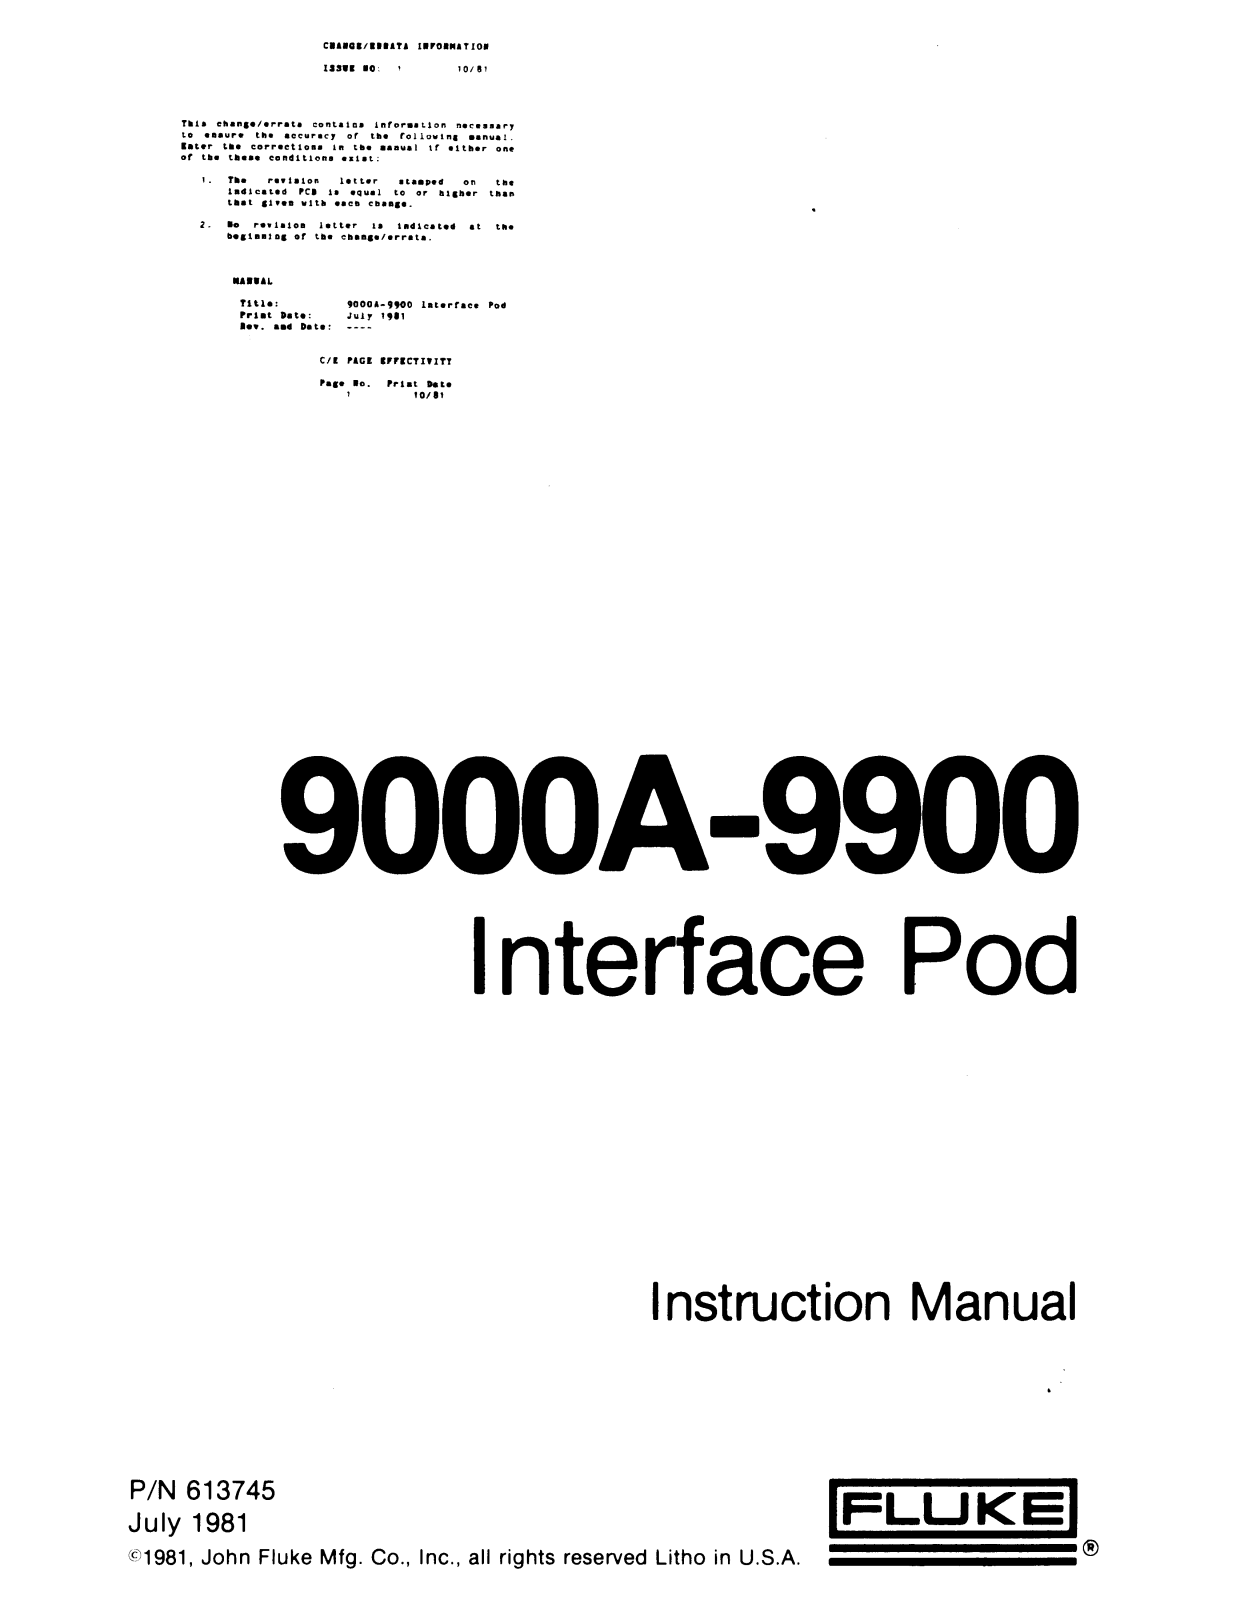 Fluke 9000A-9900 Service manual